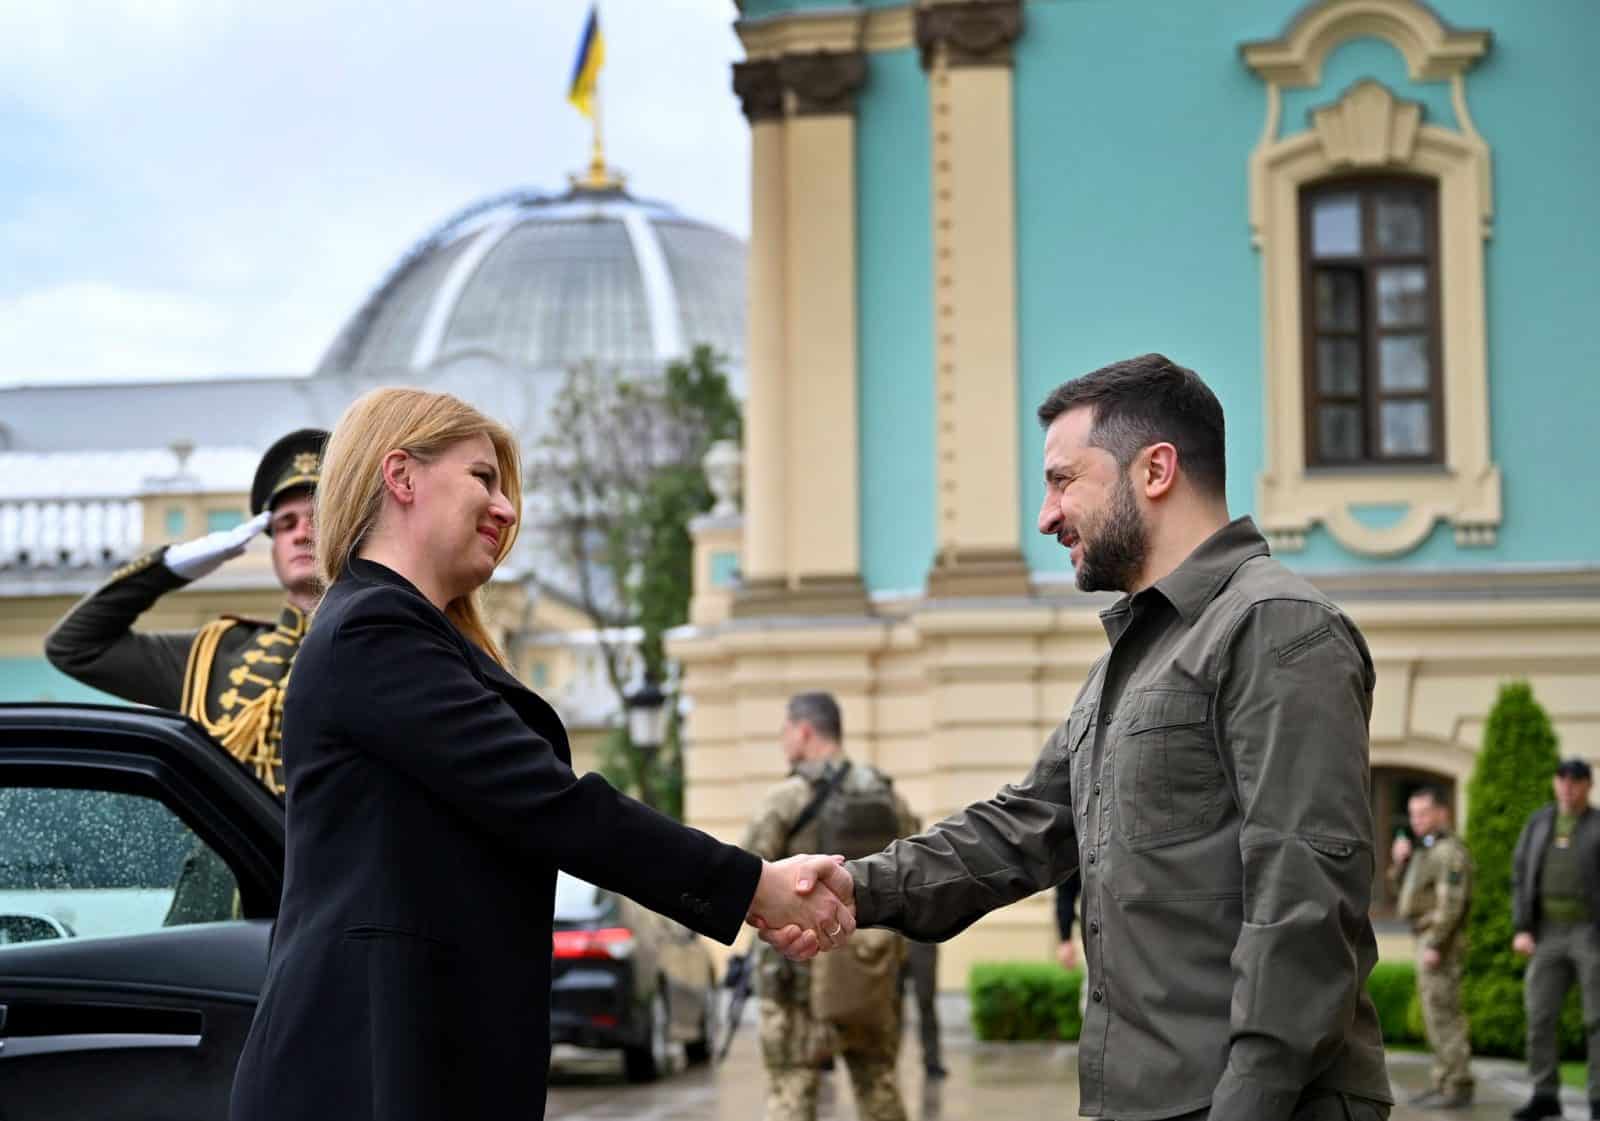 President of Slovakia visited Ukraine